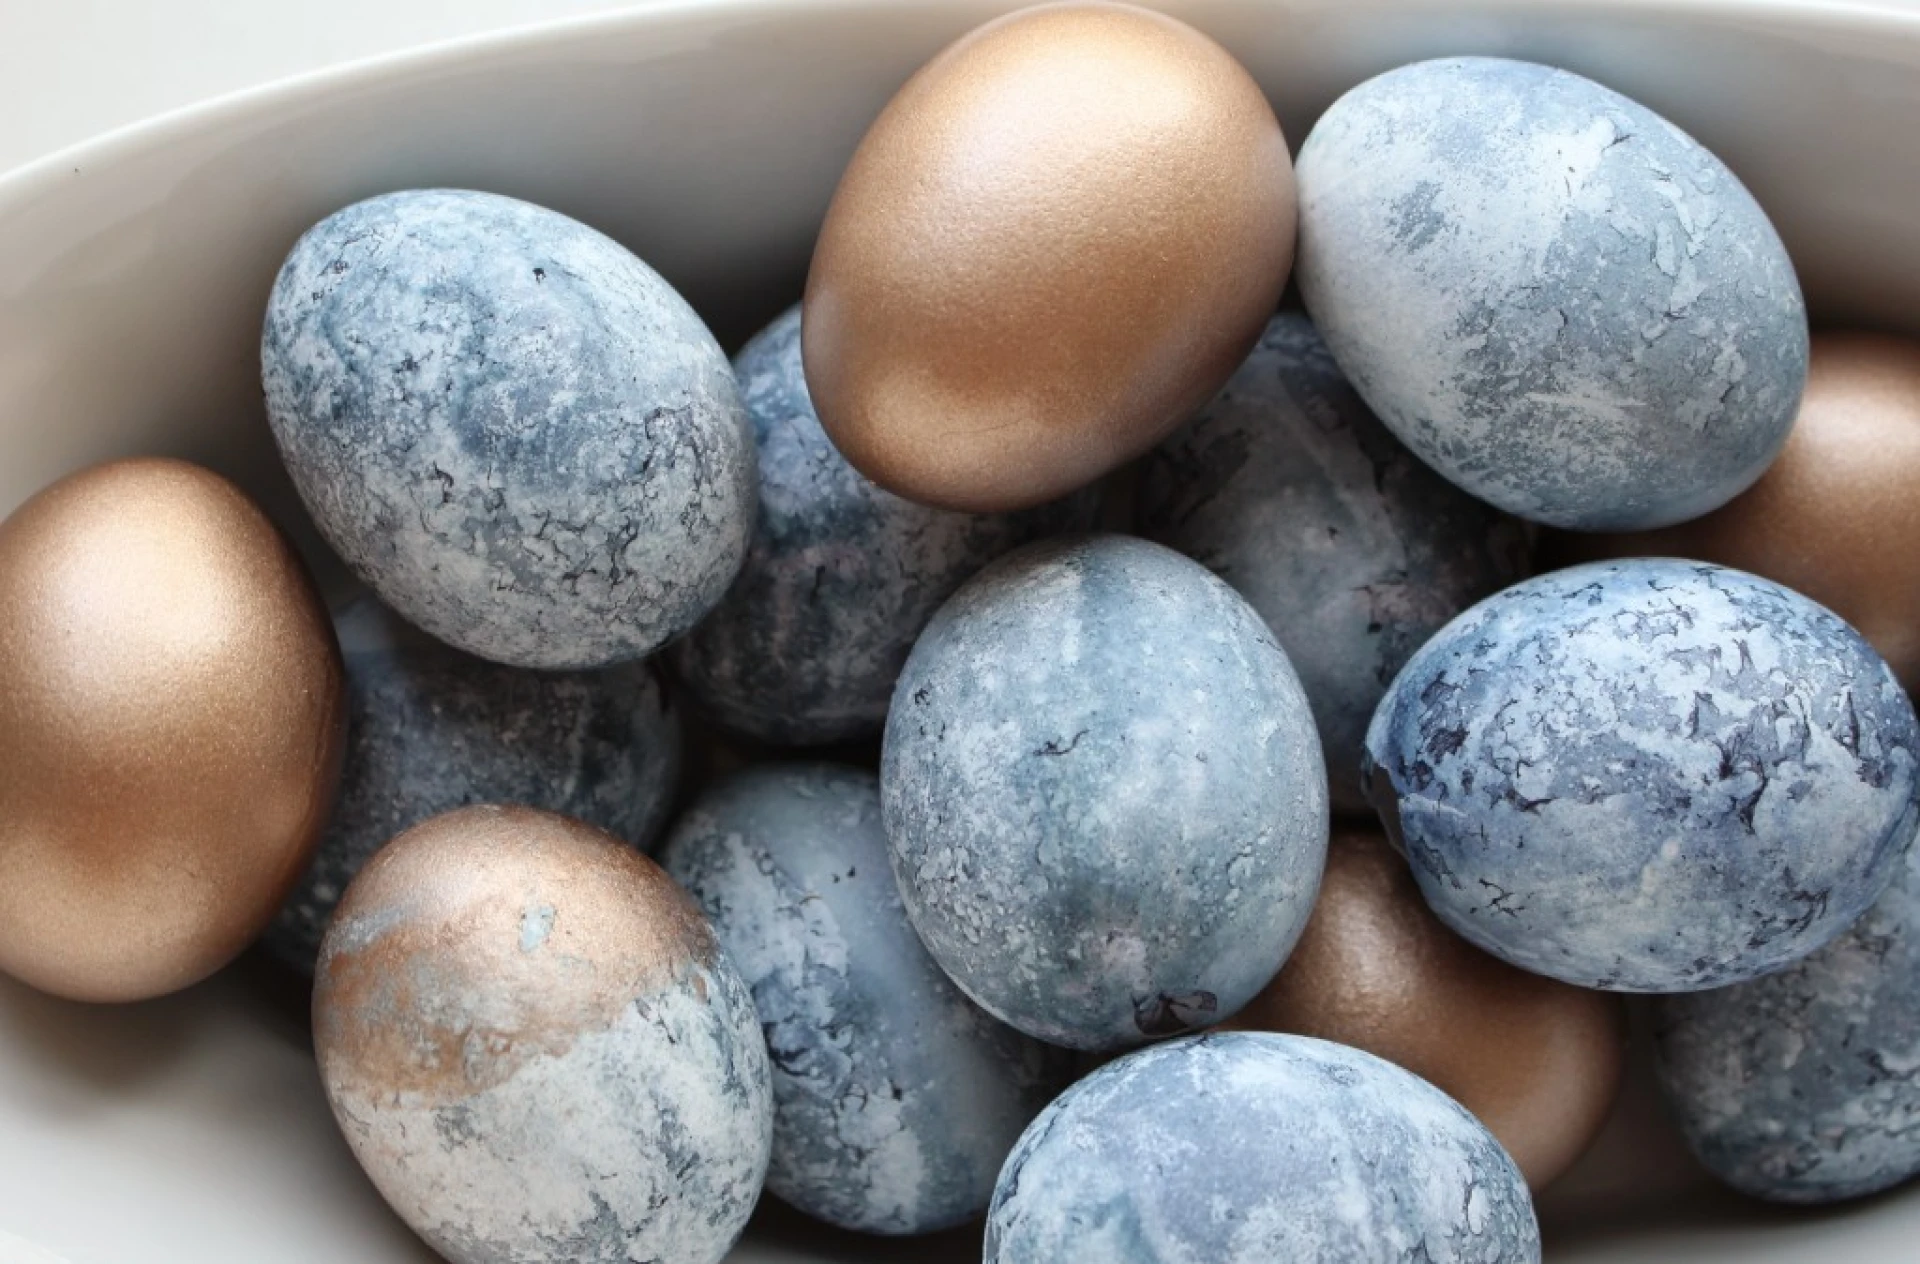 Ефектно боядисване на яйцата с тишу - още една идея за мраморен ефект